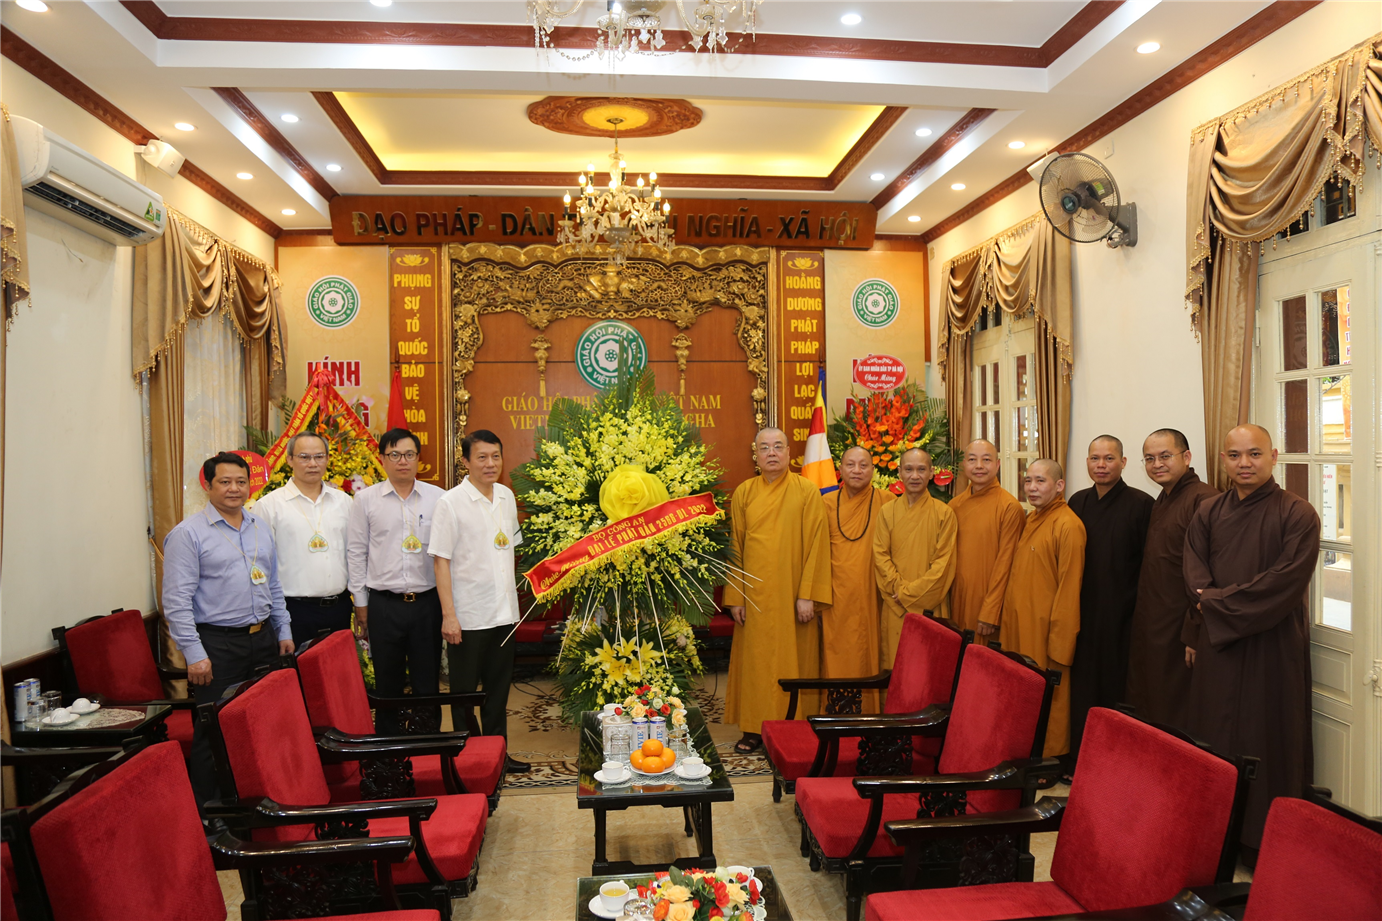 Giáo hội Phật giáo Việt Nam: Giáo hội Phật giáo Việt Nam đã trở thành một trong những tôn giáo phát triển nhất tại Việt Nam. Với nhiều lễ hội và nghi thức hấp dẫn, hãy tham gia vào các hoạt động và trải nghiệm đời sống tinh thần tuyệt vời, nhằm tìm kiếm sự từ tâm và sự tiếp thu triết lý của Đức Thế Tôn.